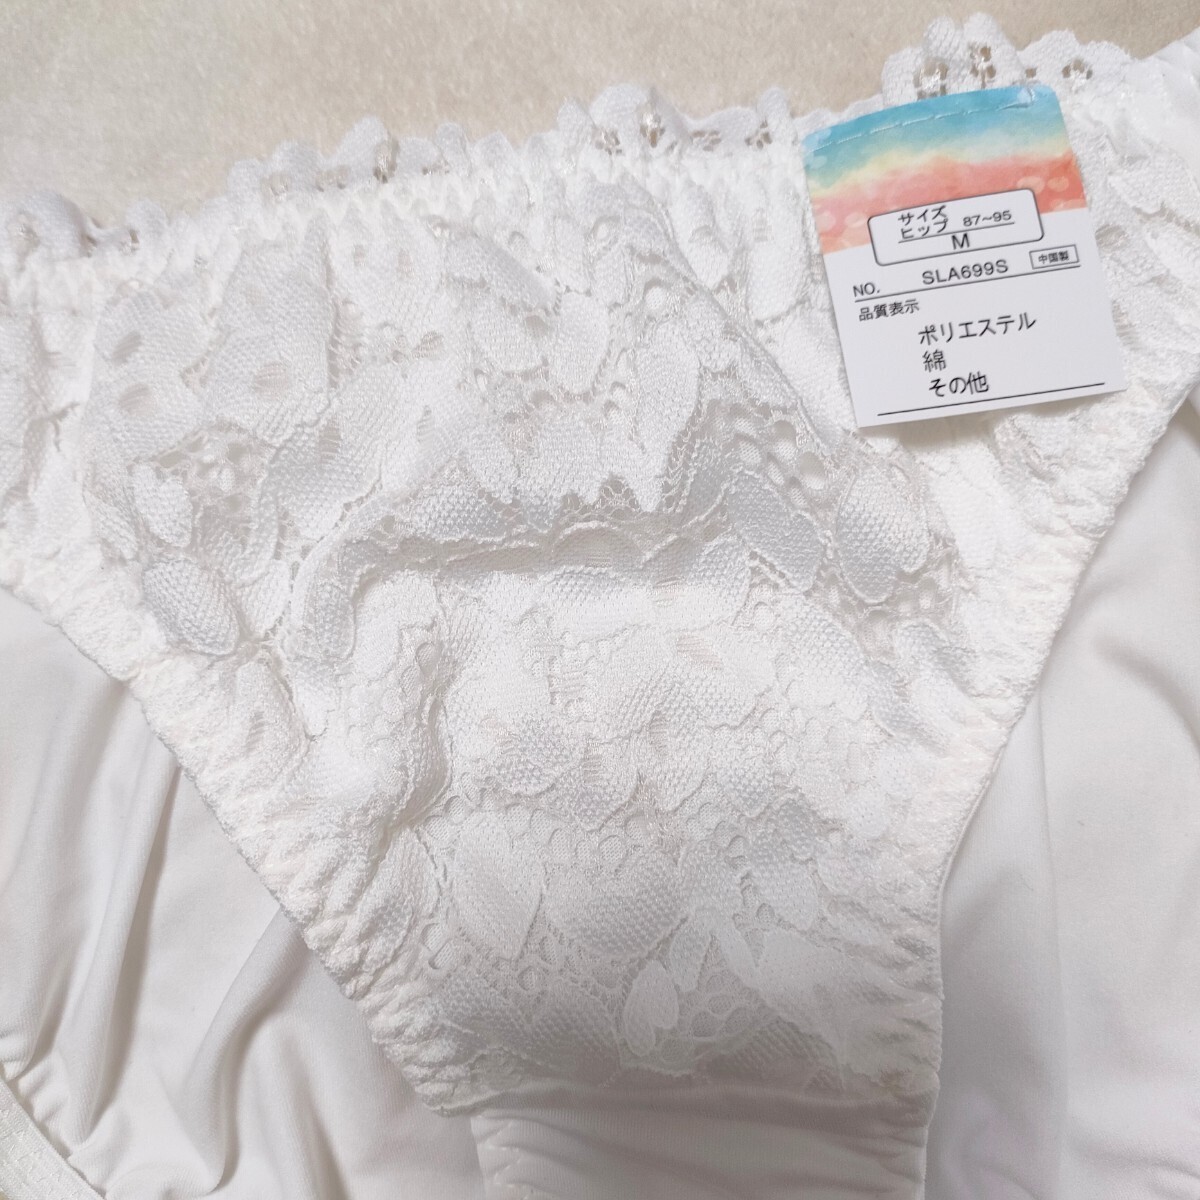 新品 パンティ トリコットショーツ リボン刺繍 ホワイト 白 Lサイズ☆彡*°の画像4